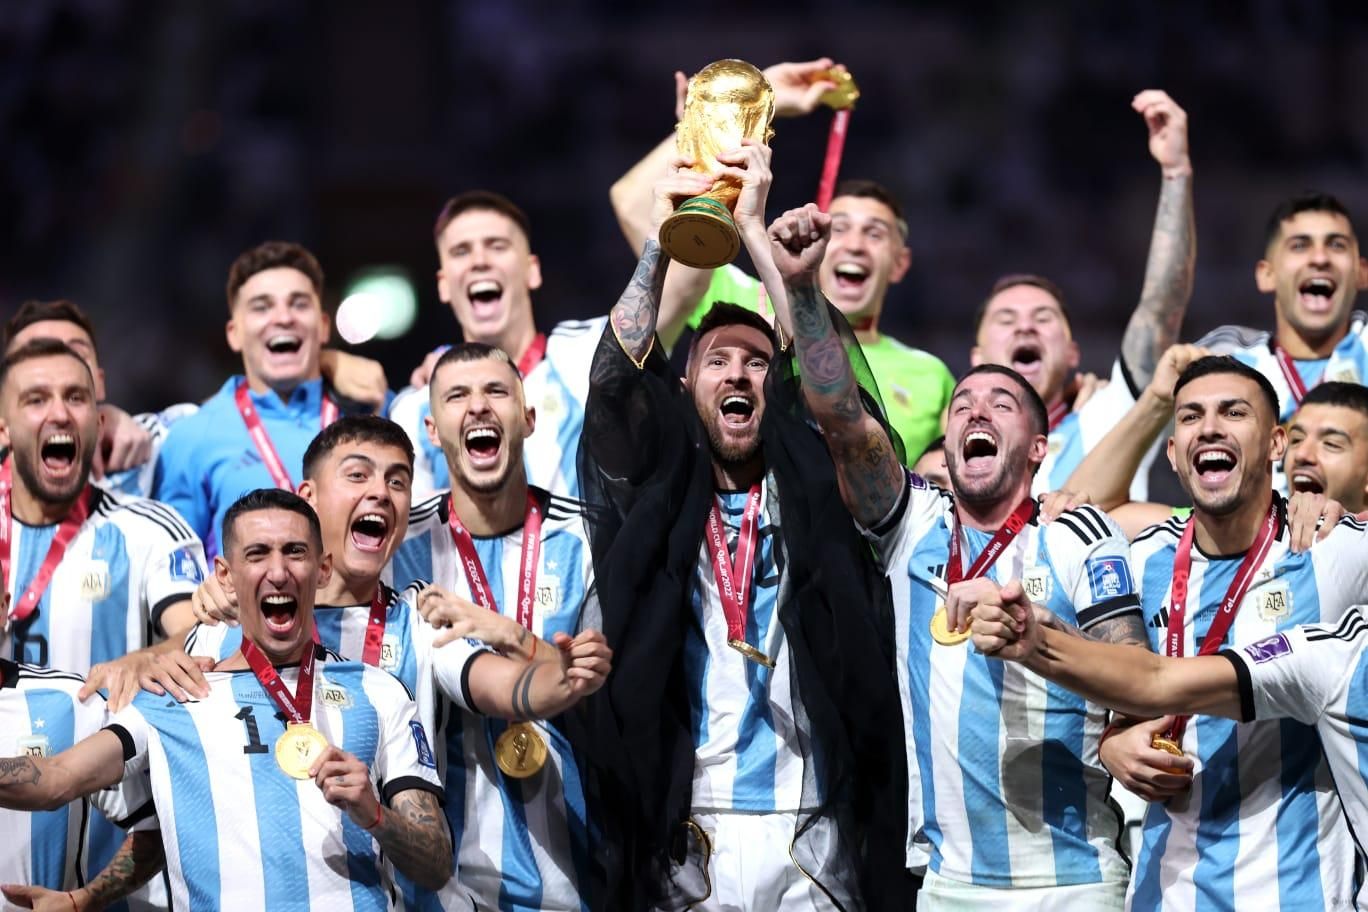 Como foi o último jogo entre França e Argentina em Copa do Mundo?